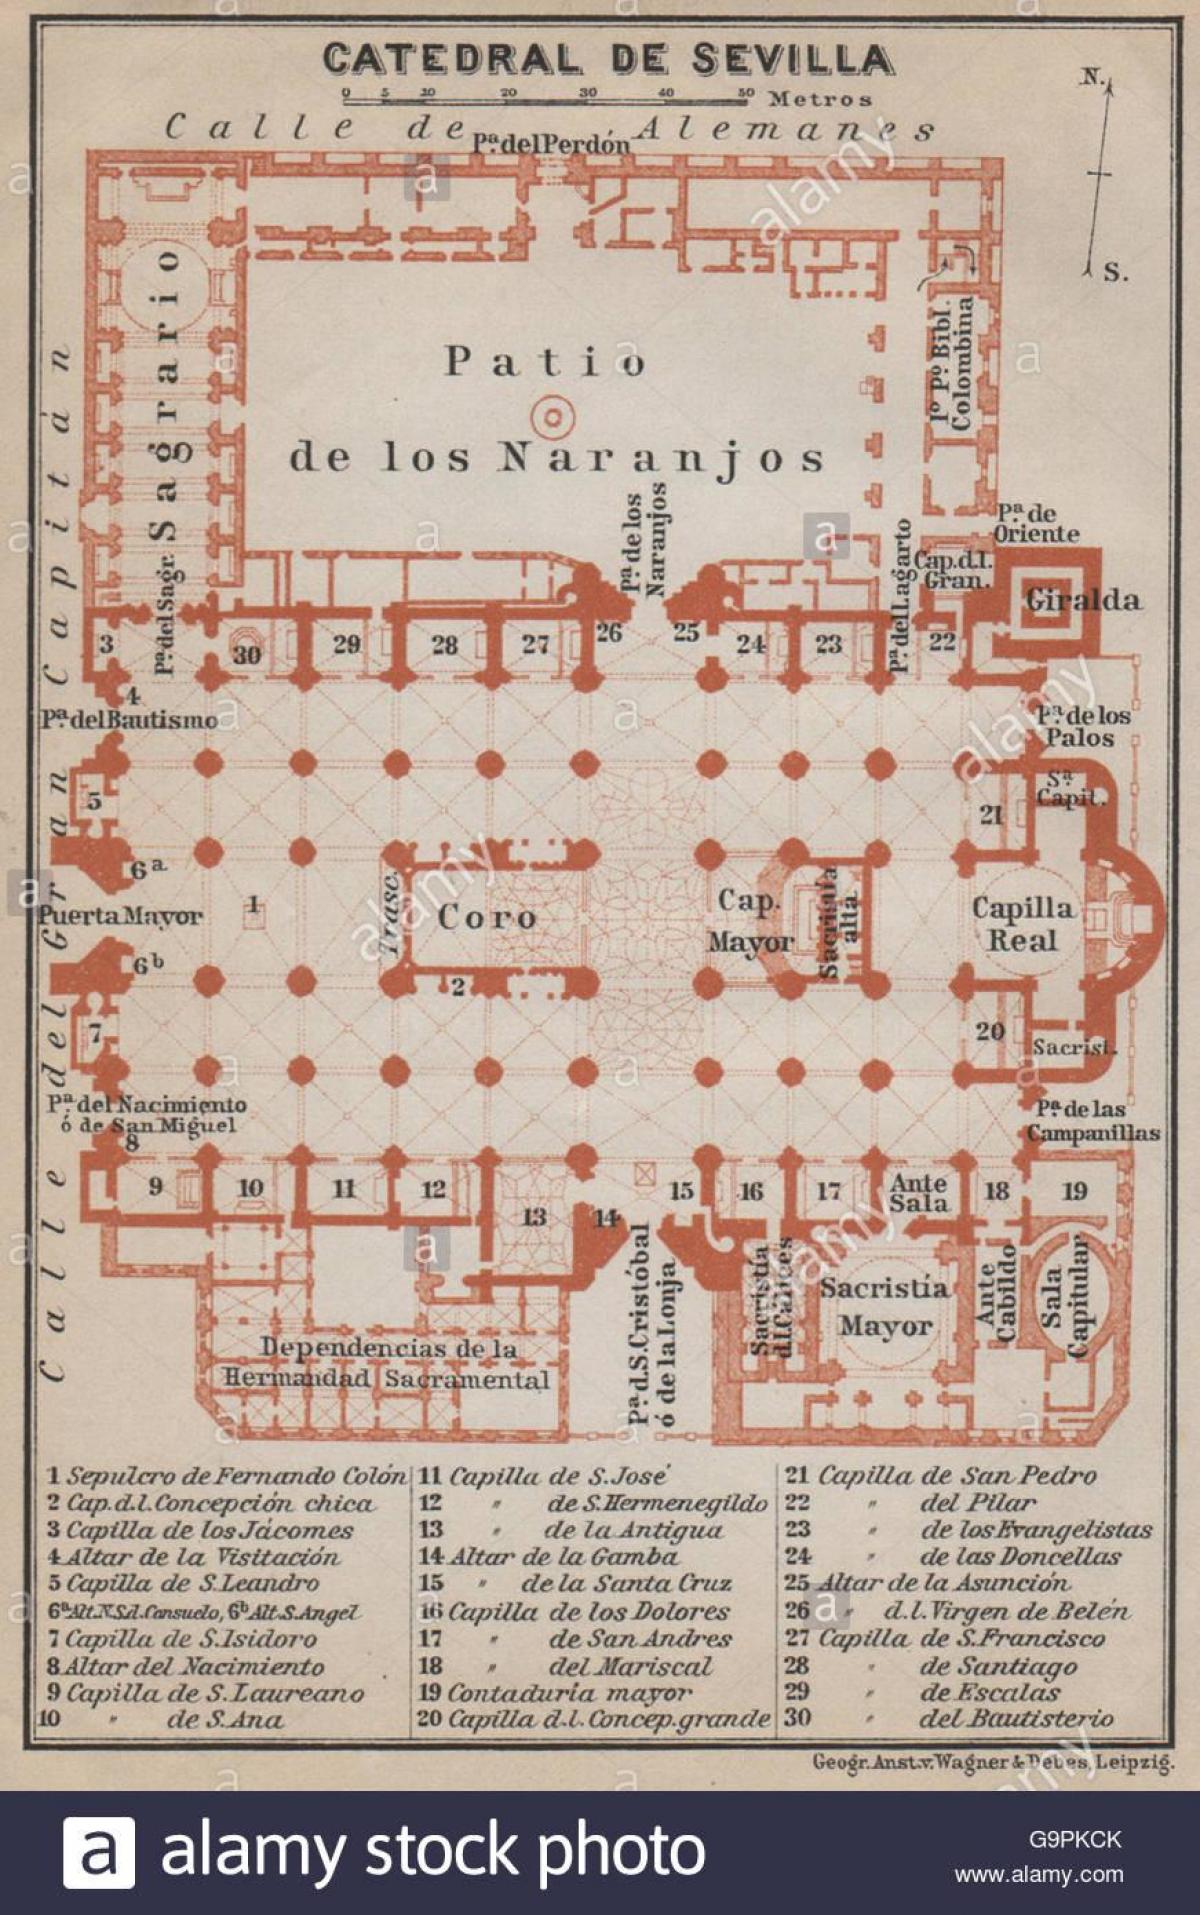 karta iz Sevilje katedrale